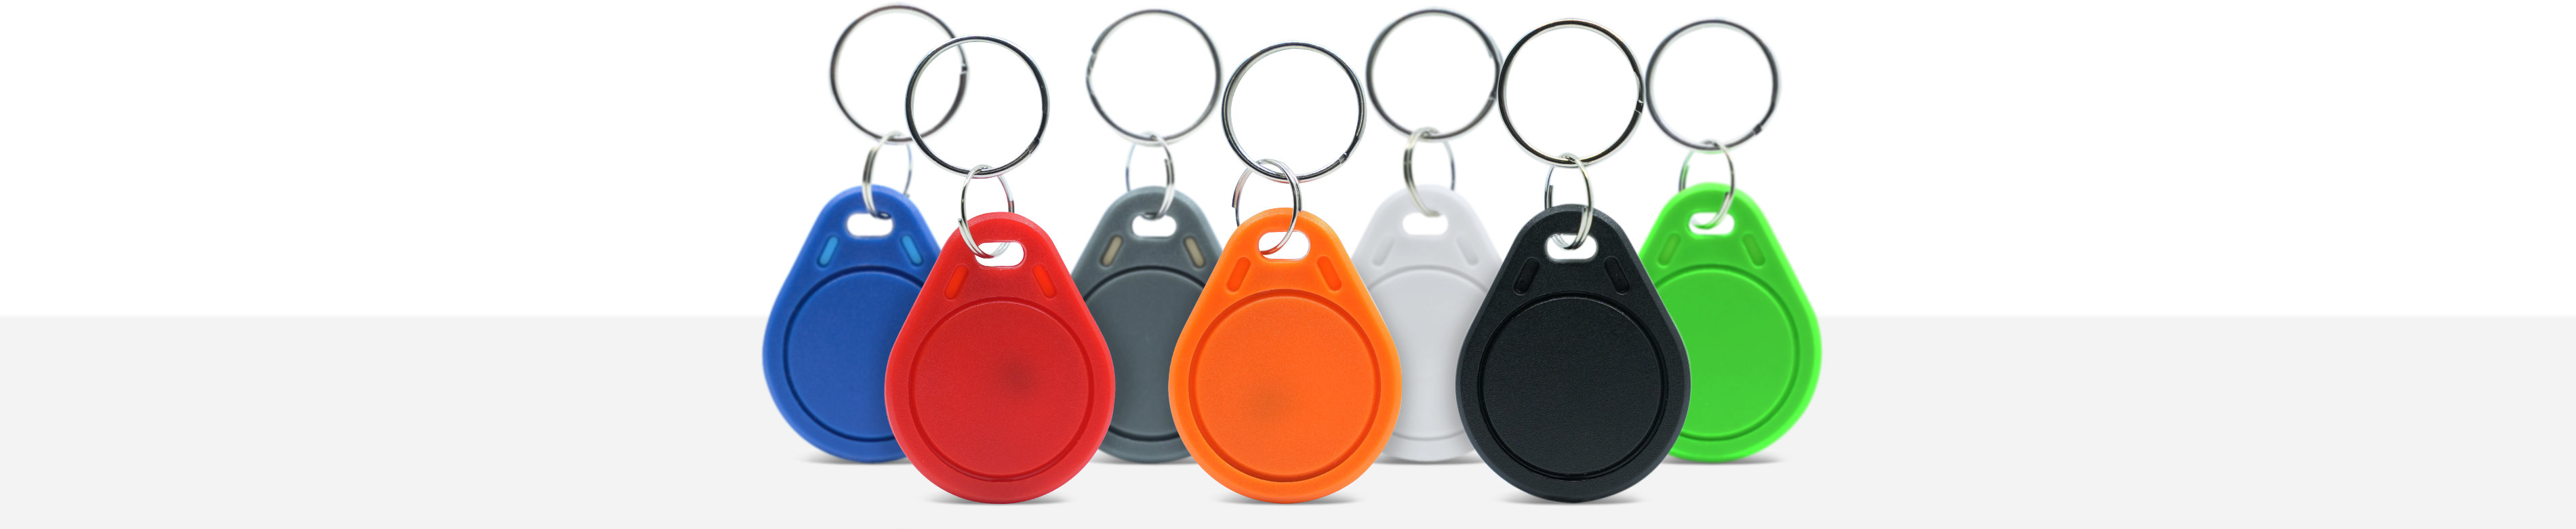 NFC ABS Schlüsselanhänger in verschiedenen Farben